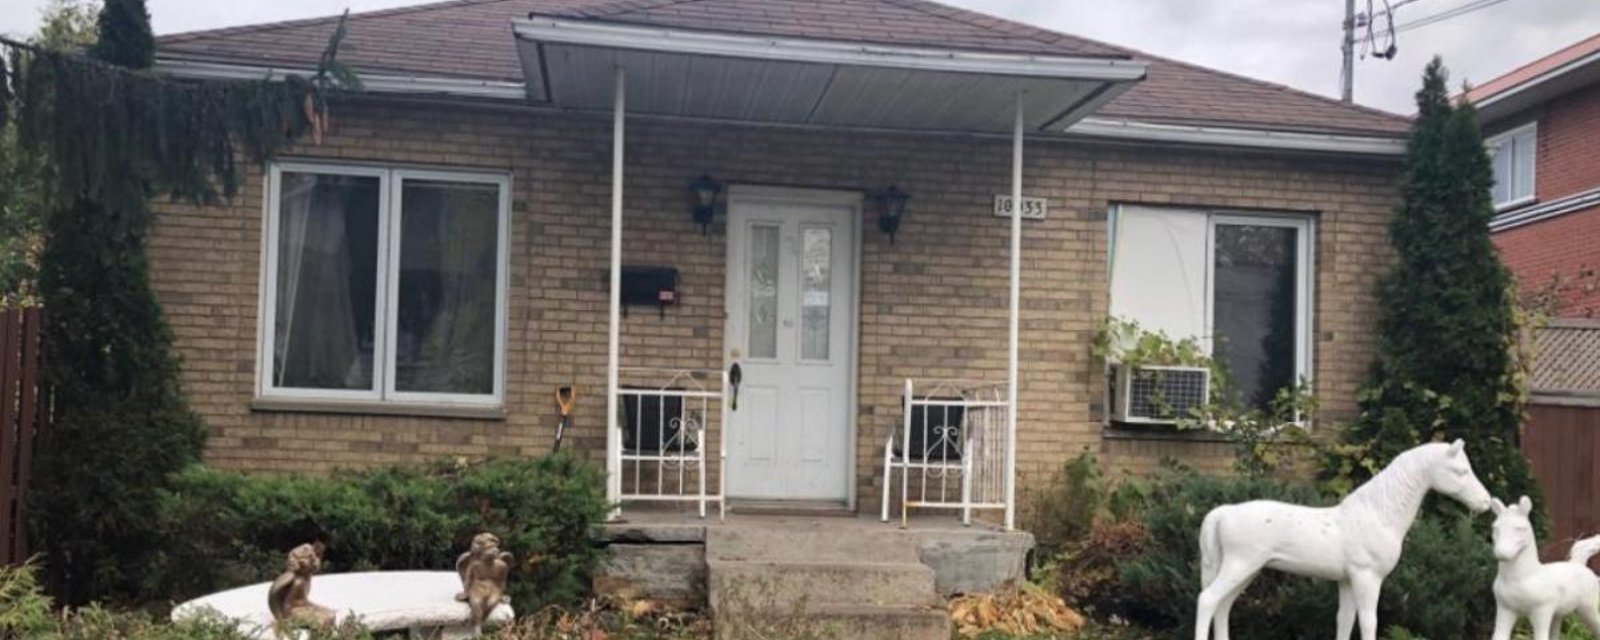 Les photos de cette maison à vendre à Montréal donnent la nausée 